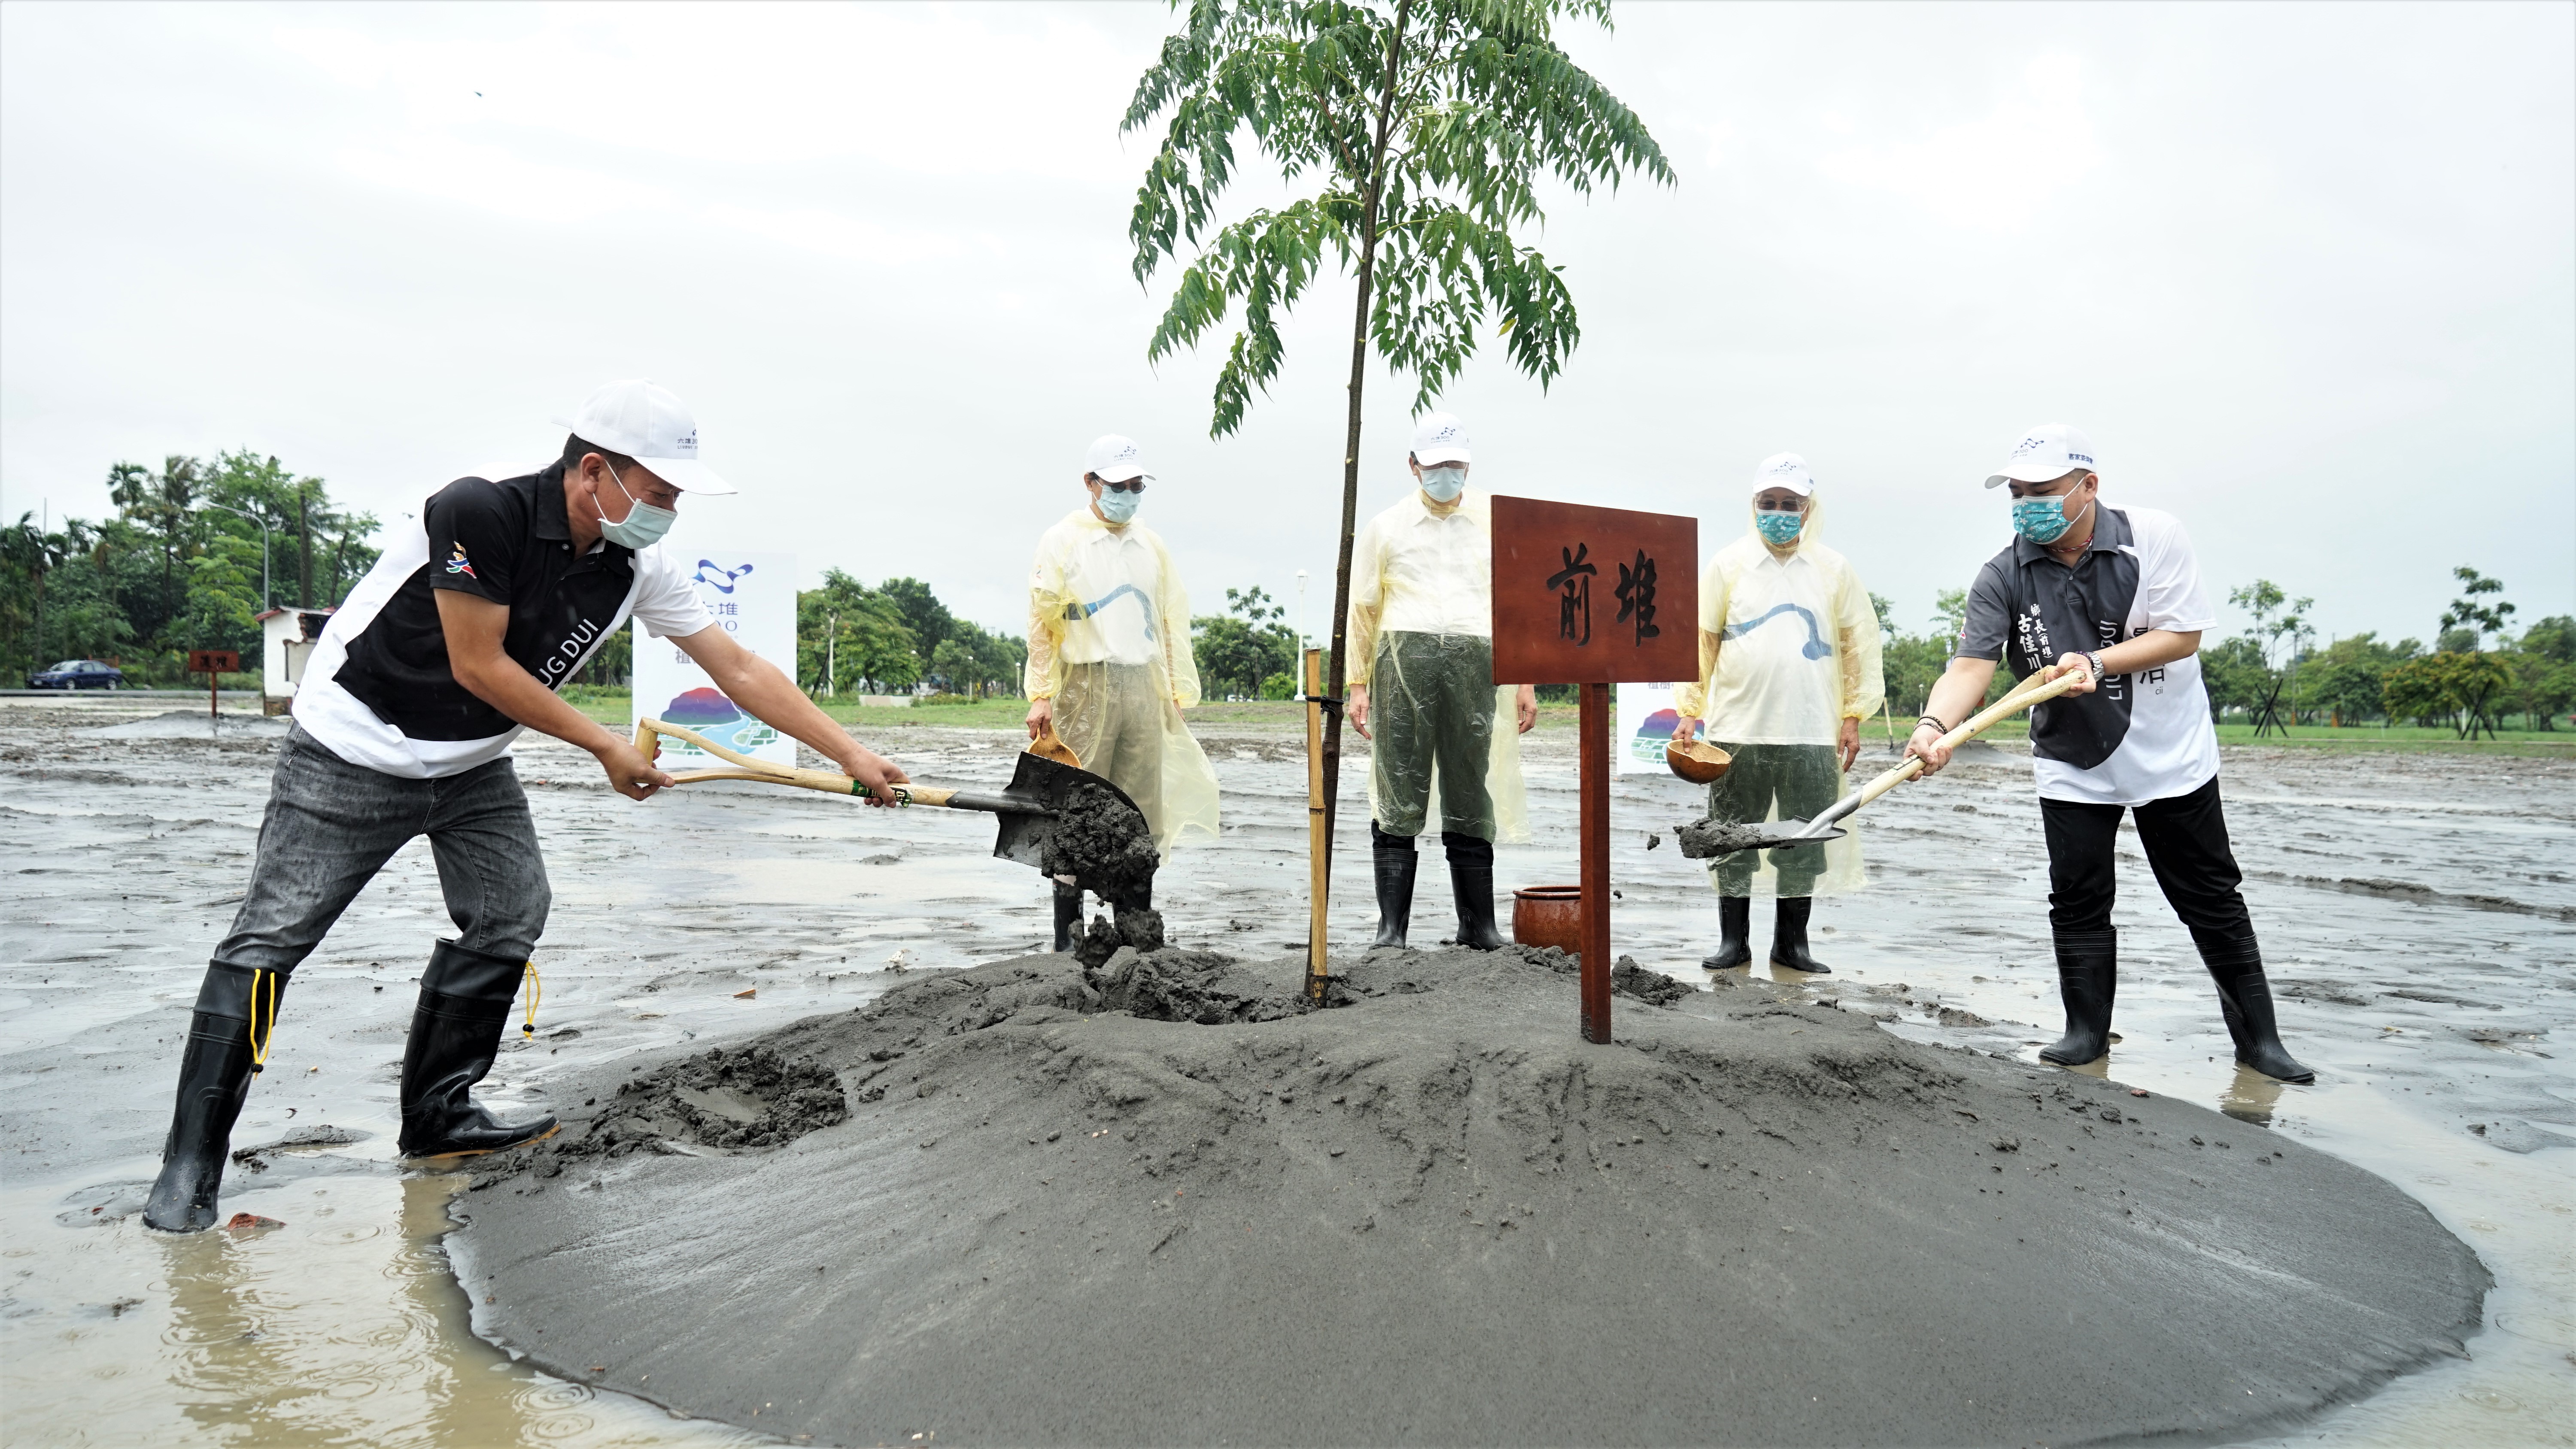 Tree planting in Qiandui. Starting from the left: Zhong Qingping, Head of Linluo Township, Zhong Kongju, the Vice Co-Chairman of the Hakka Affairs Council, Yang Changzhen, the Co-Chairman, Liao Songxiong, the Convener, and the Head of Gujiachuan township